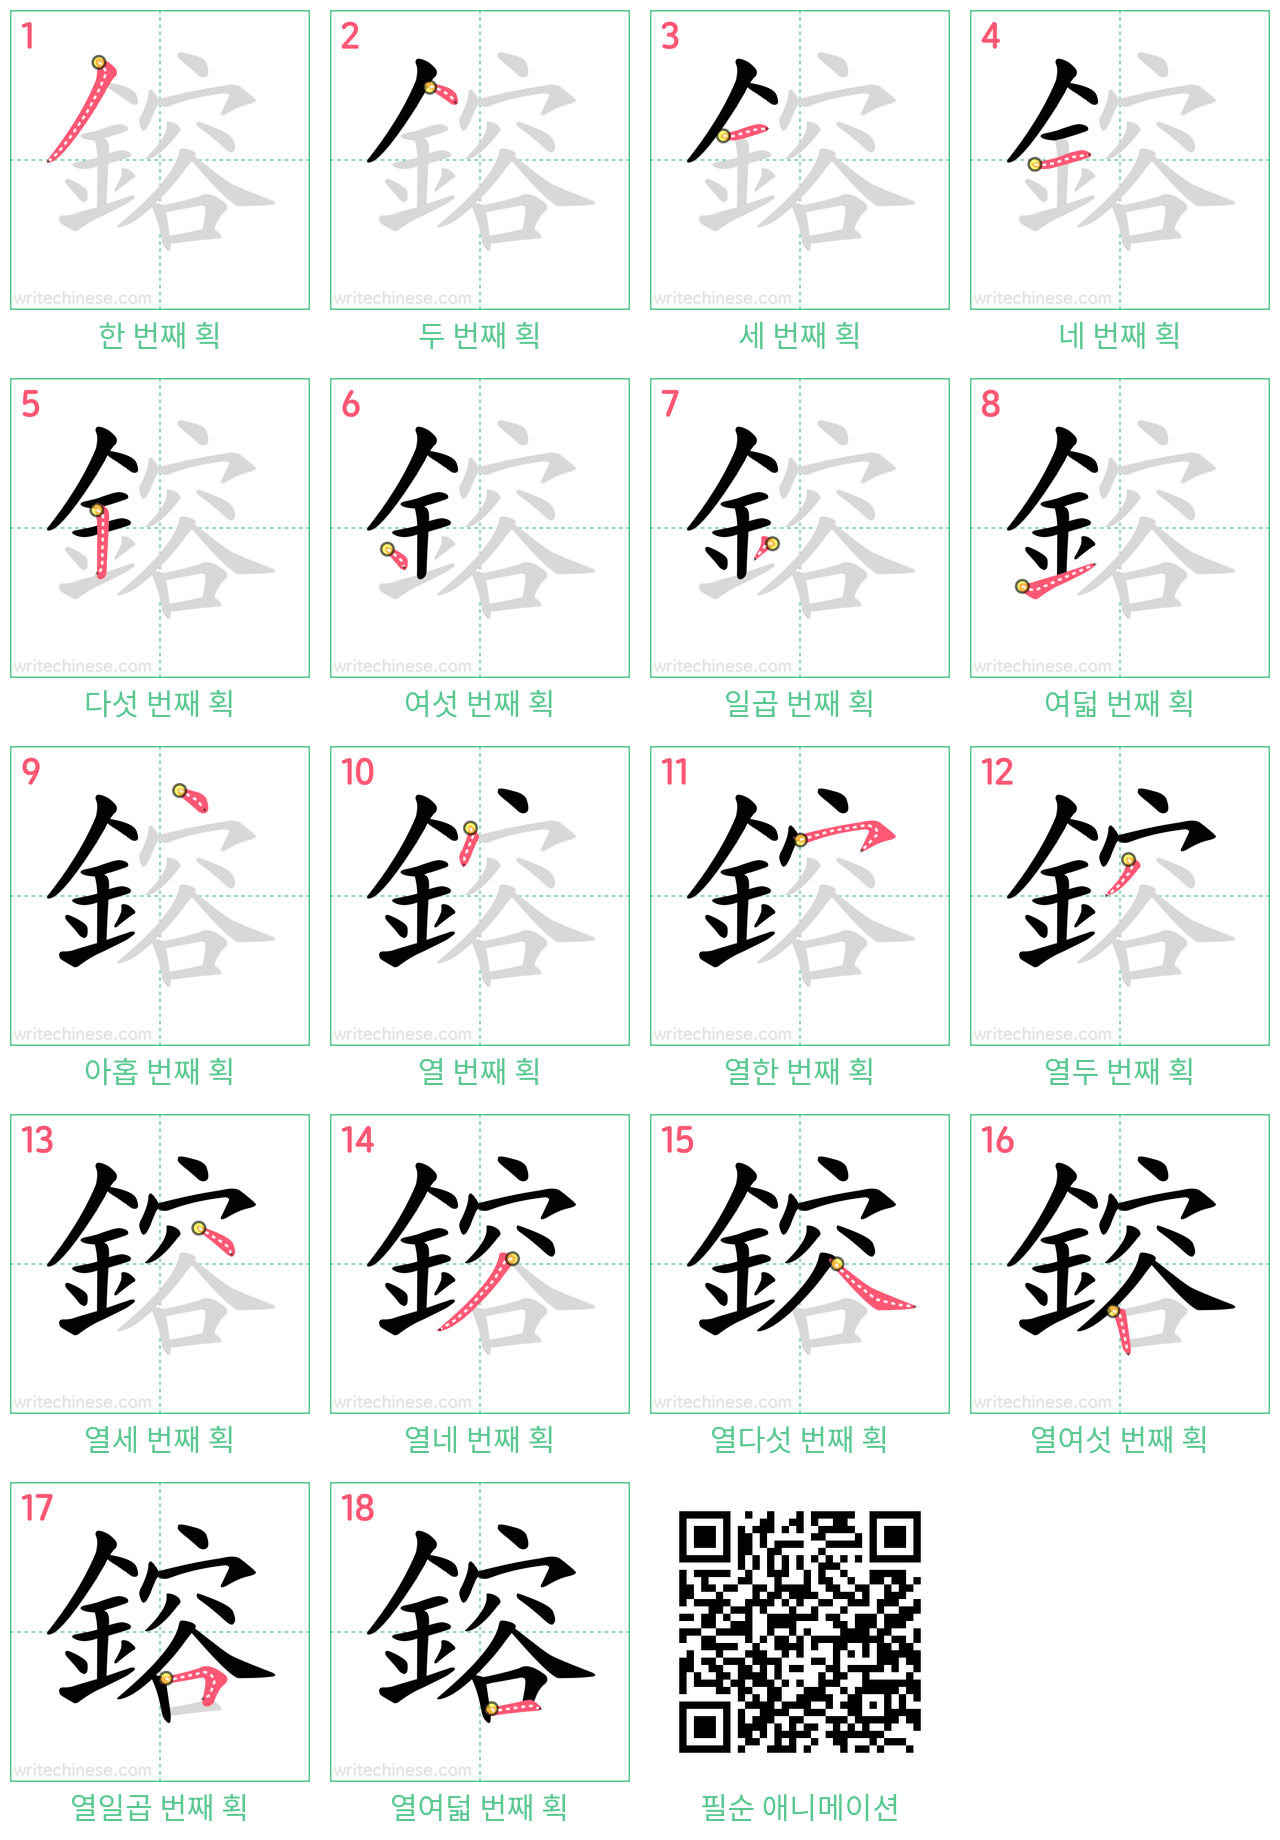 鎔 step-by-step stroke order diagrams